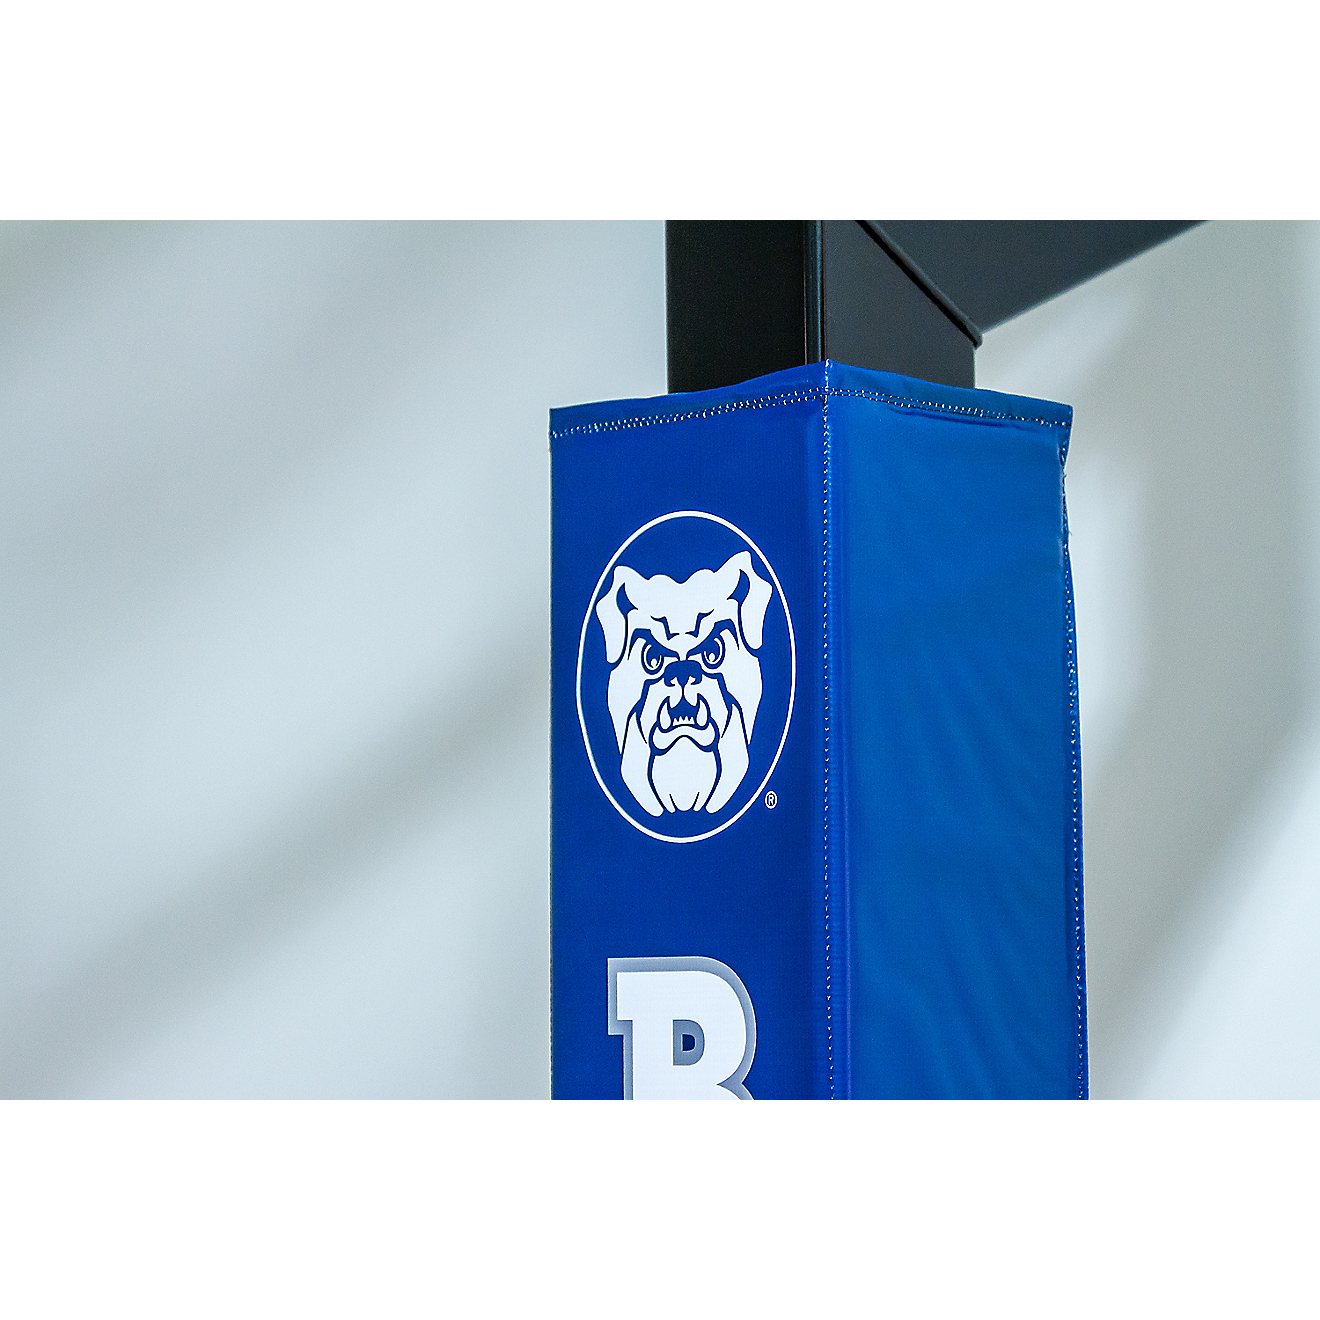 Goalsetter Butler University Basketball Hoop Pole Padding                                                                        - view number 3